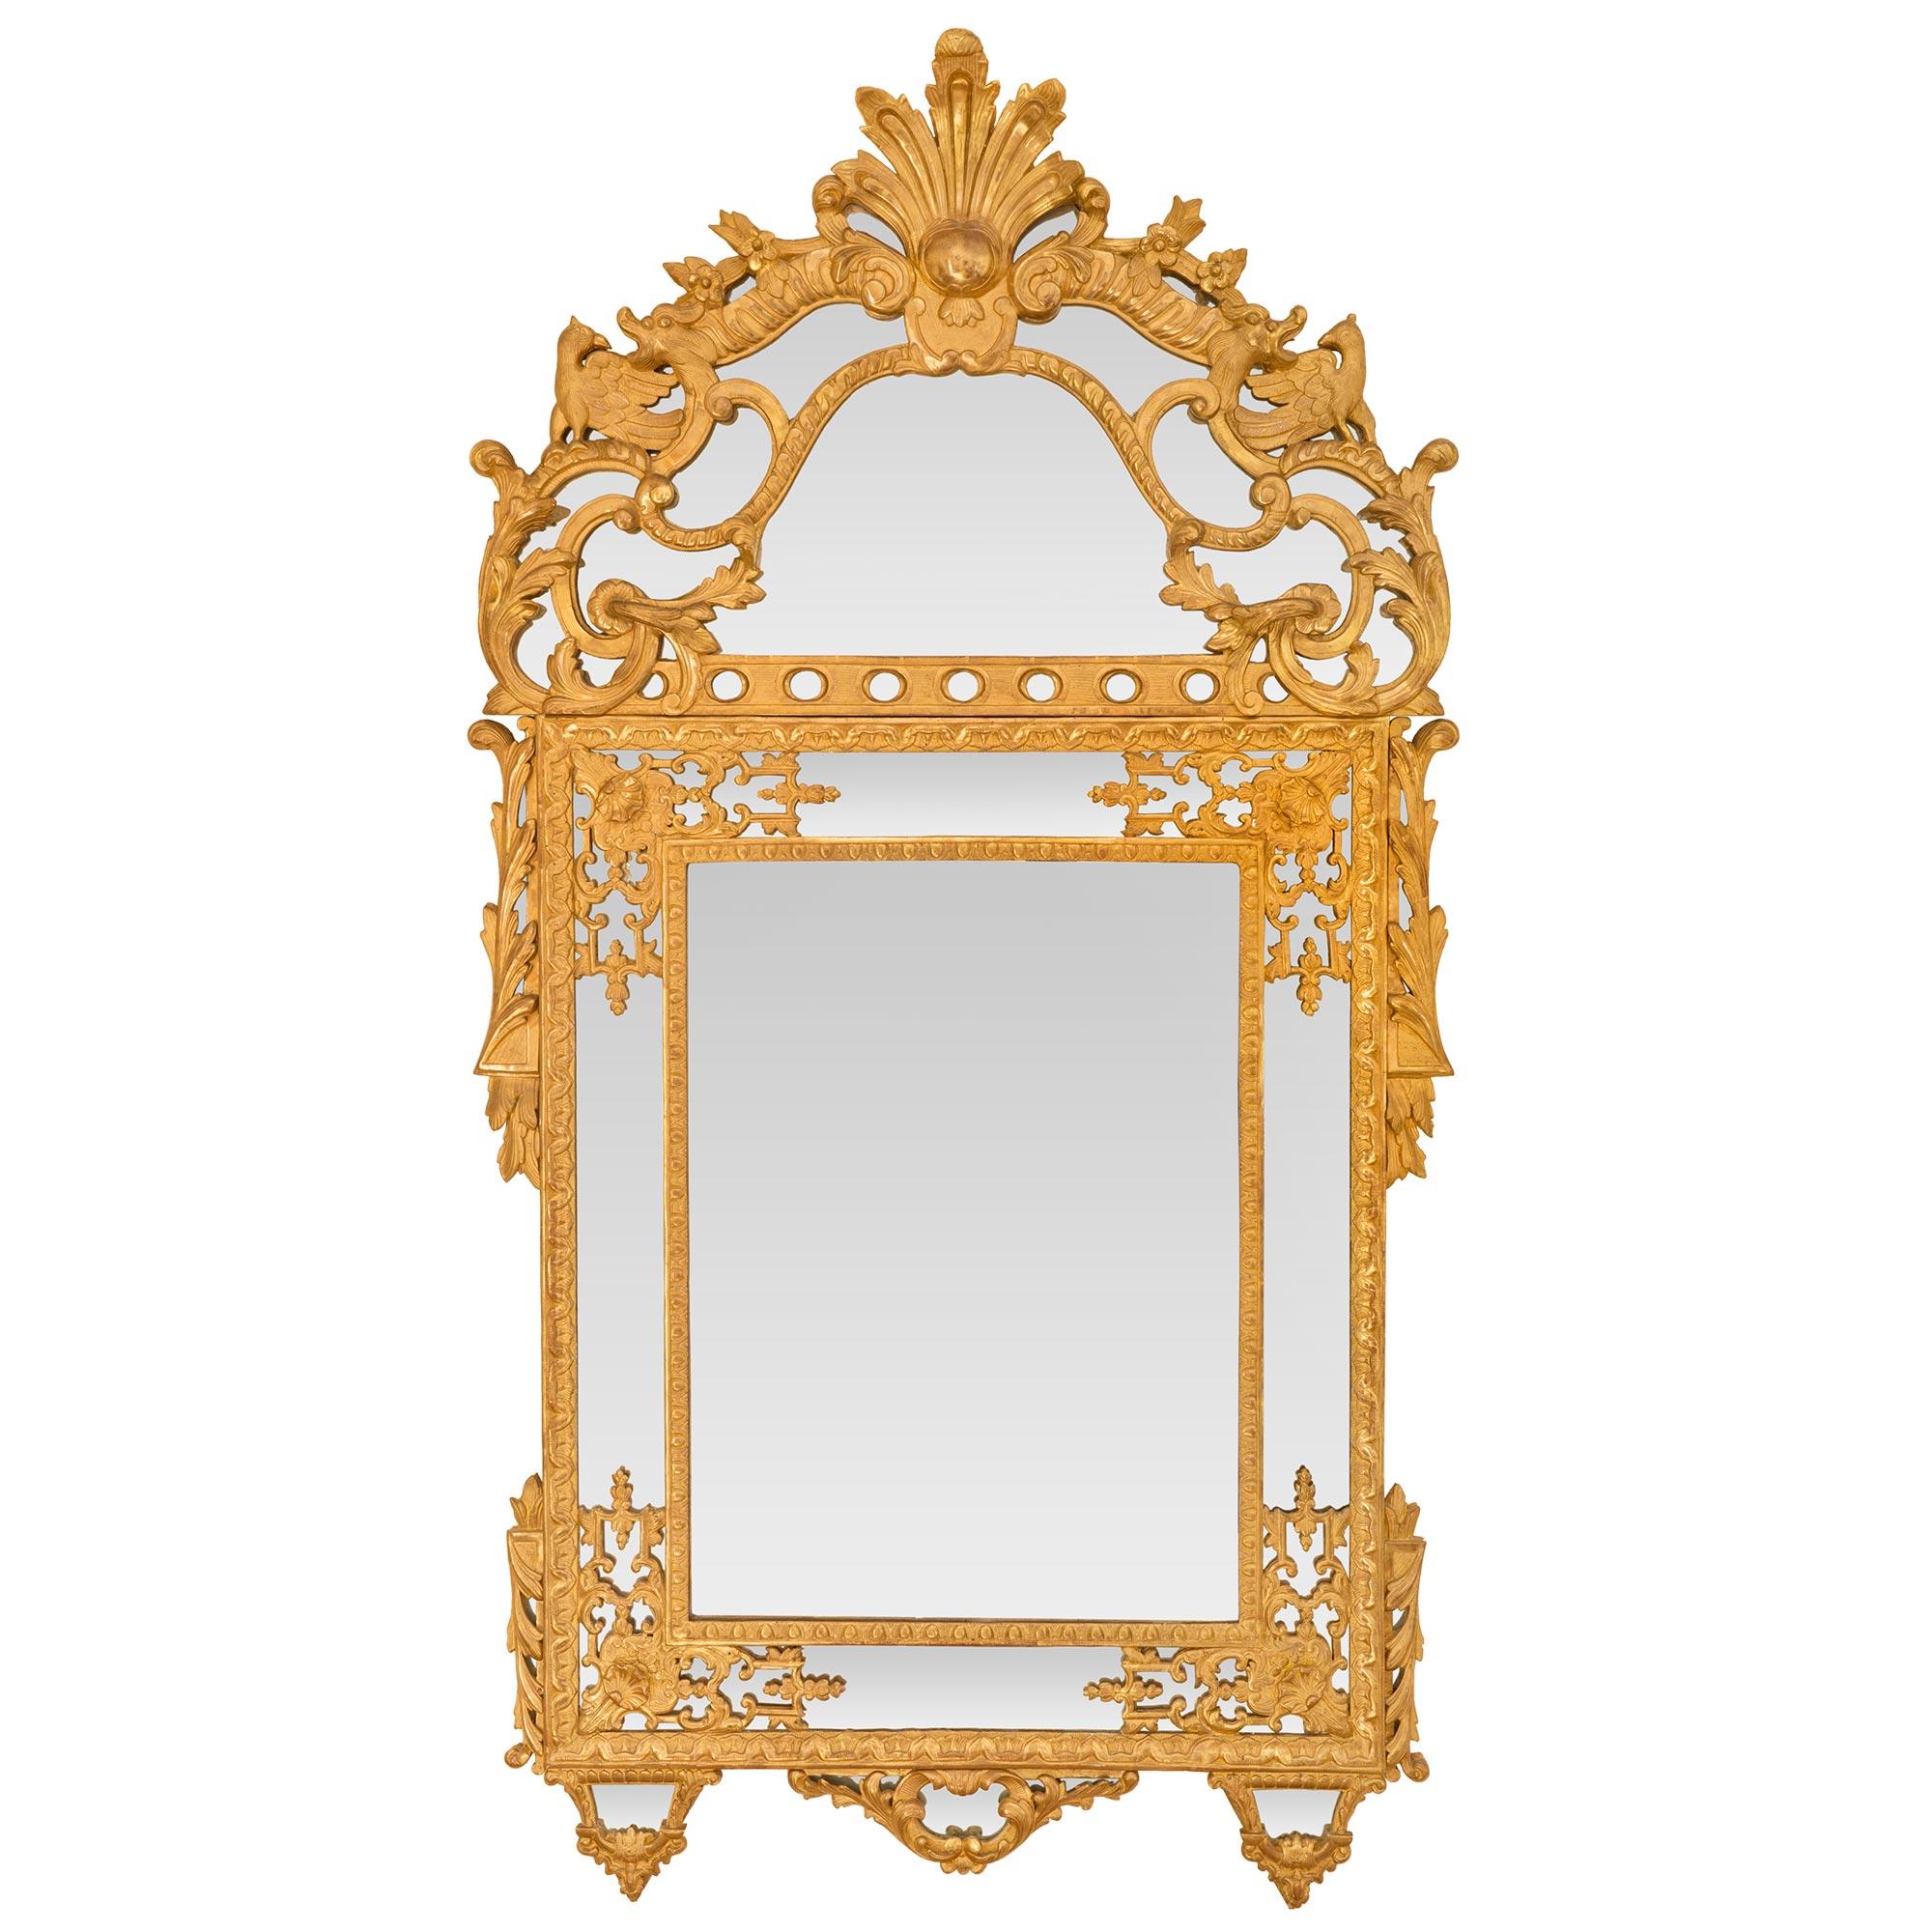 Ein beeindruckender und sehr hochwertiger französischer Rgence-Spiegel aus dem 19. Jahrhundert mit doppeltem Rahmen aus vergoldetem Holz. Der Spiegel ist durchgehend mit allen Originalspiegelplatten versehen, wobei die zentrale Platte von einem fein